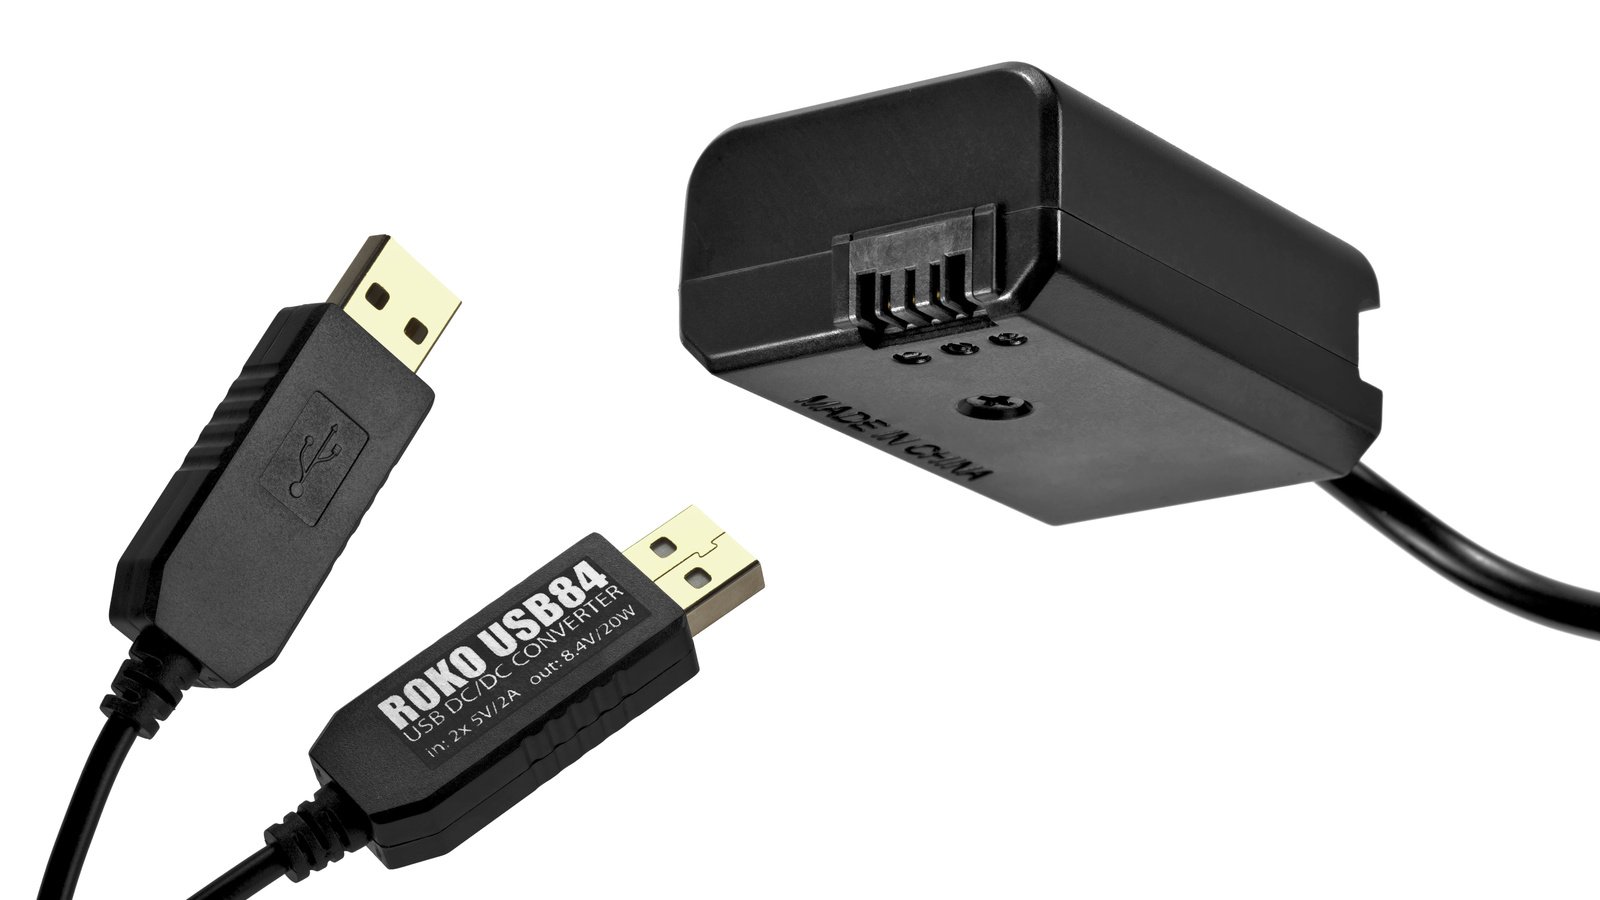 Der NP-F50 Akkudummy wird per Stecker und Buchse mit dem USB-Kabel verbunden